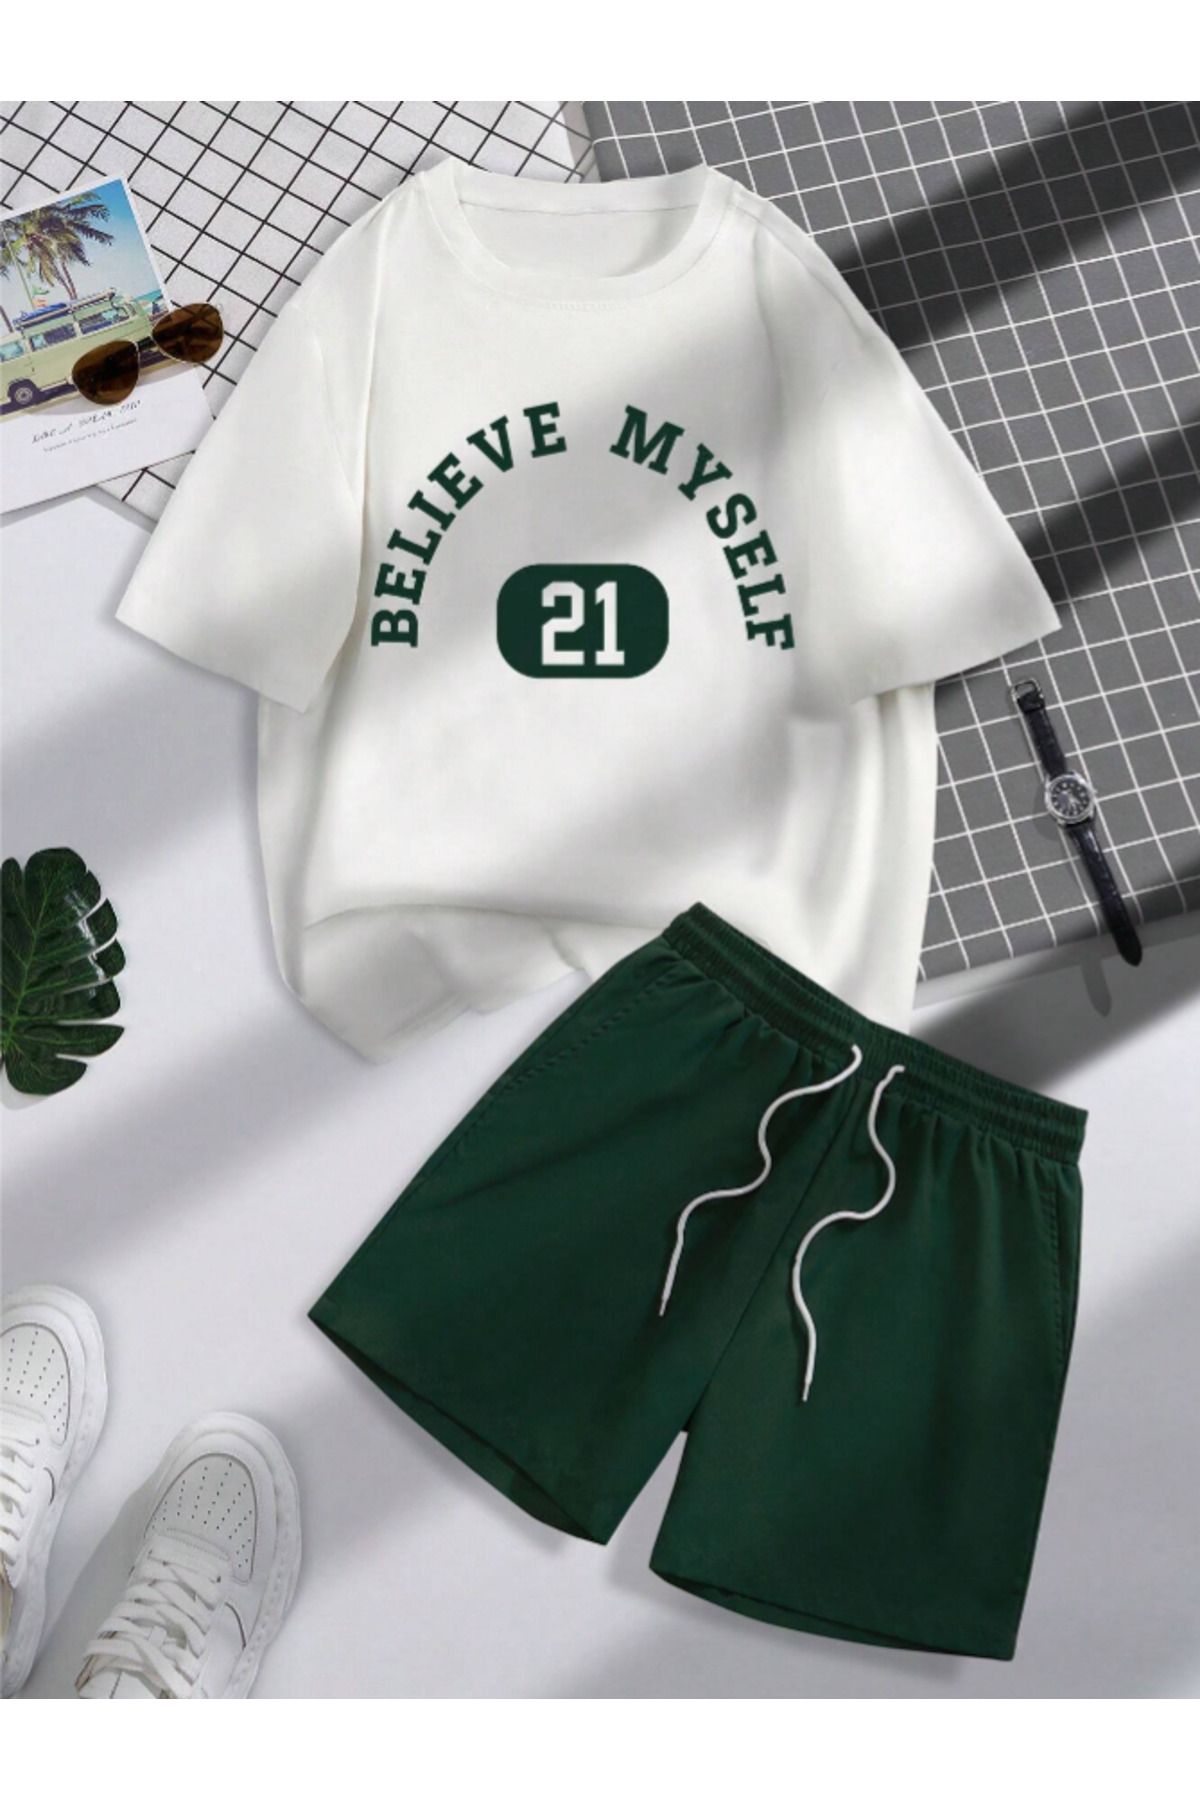 Revasser Unisex Kadın/Erkek Beyaz Yeşil Believe Özel Baskılı Şort T-shirt Takımı